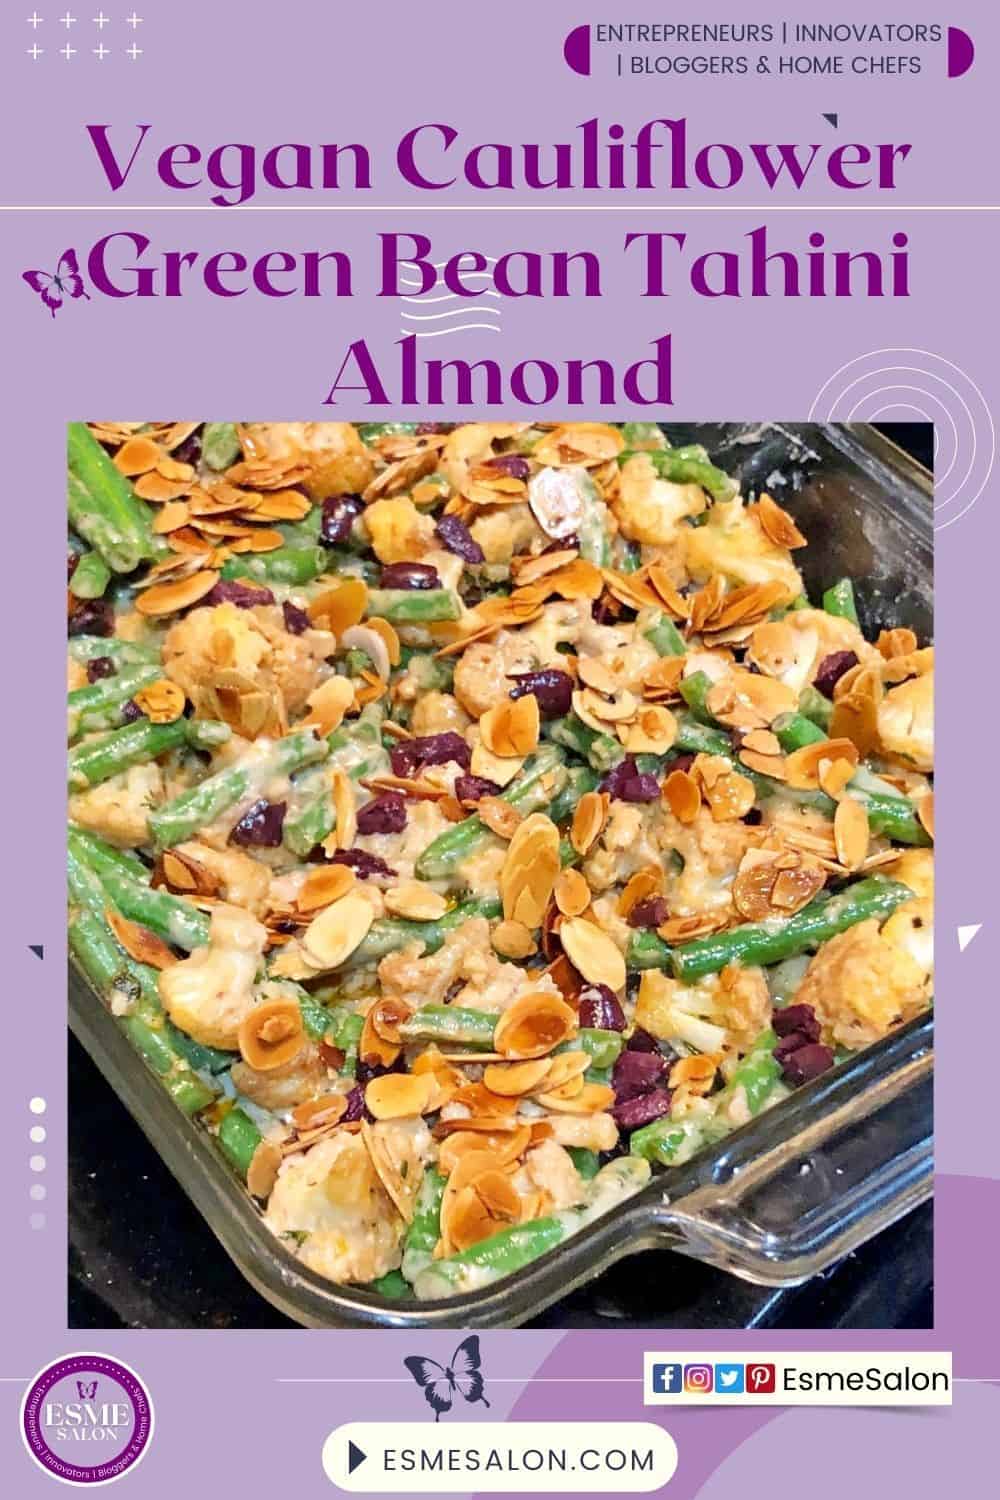 Vegan Green Bean Tahini Almond Vegetables